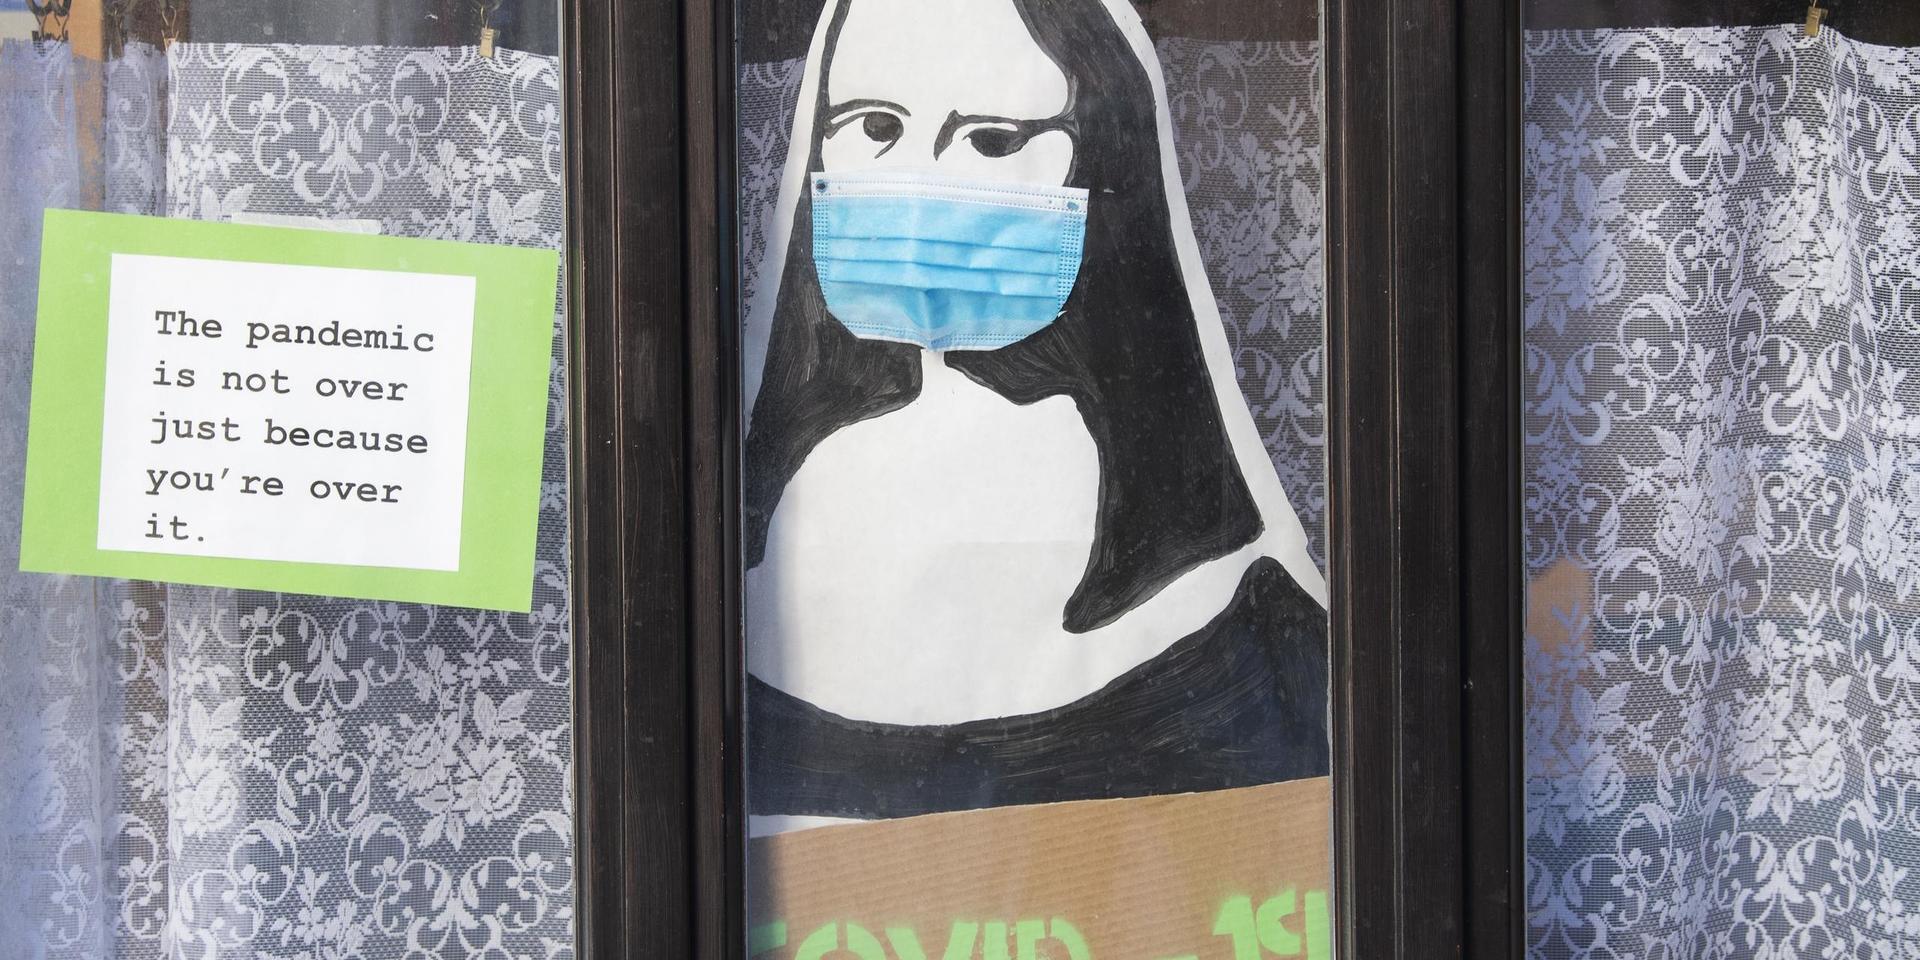 Stockholm 20210323
Mona-Lisa med munskydd manar till försiktighet i covid-tider i ett skyltfönster i Gamla stan.
Foto: Fredrik Sandberg / TT kod 10080